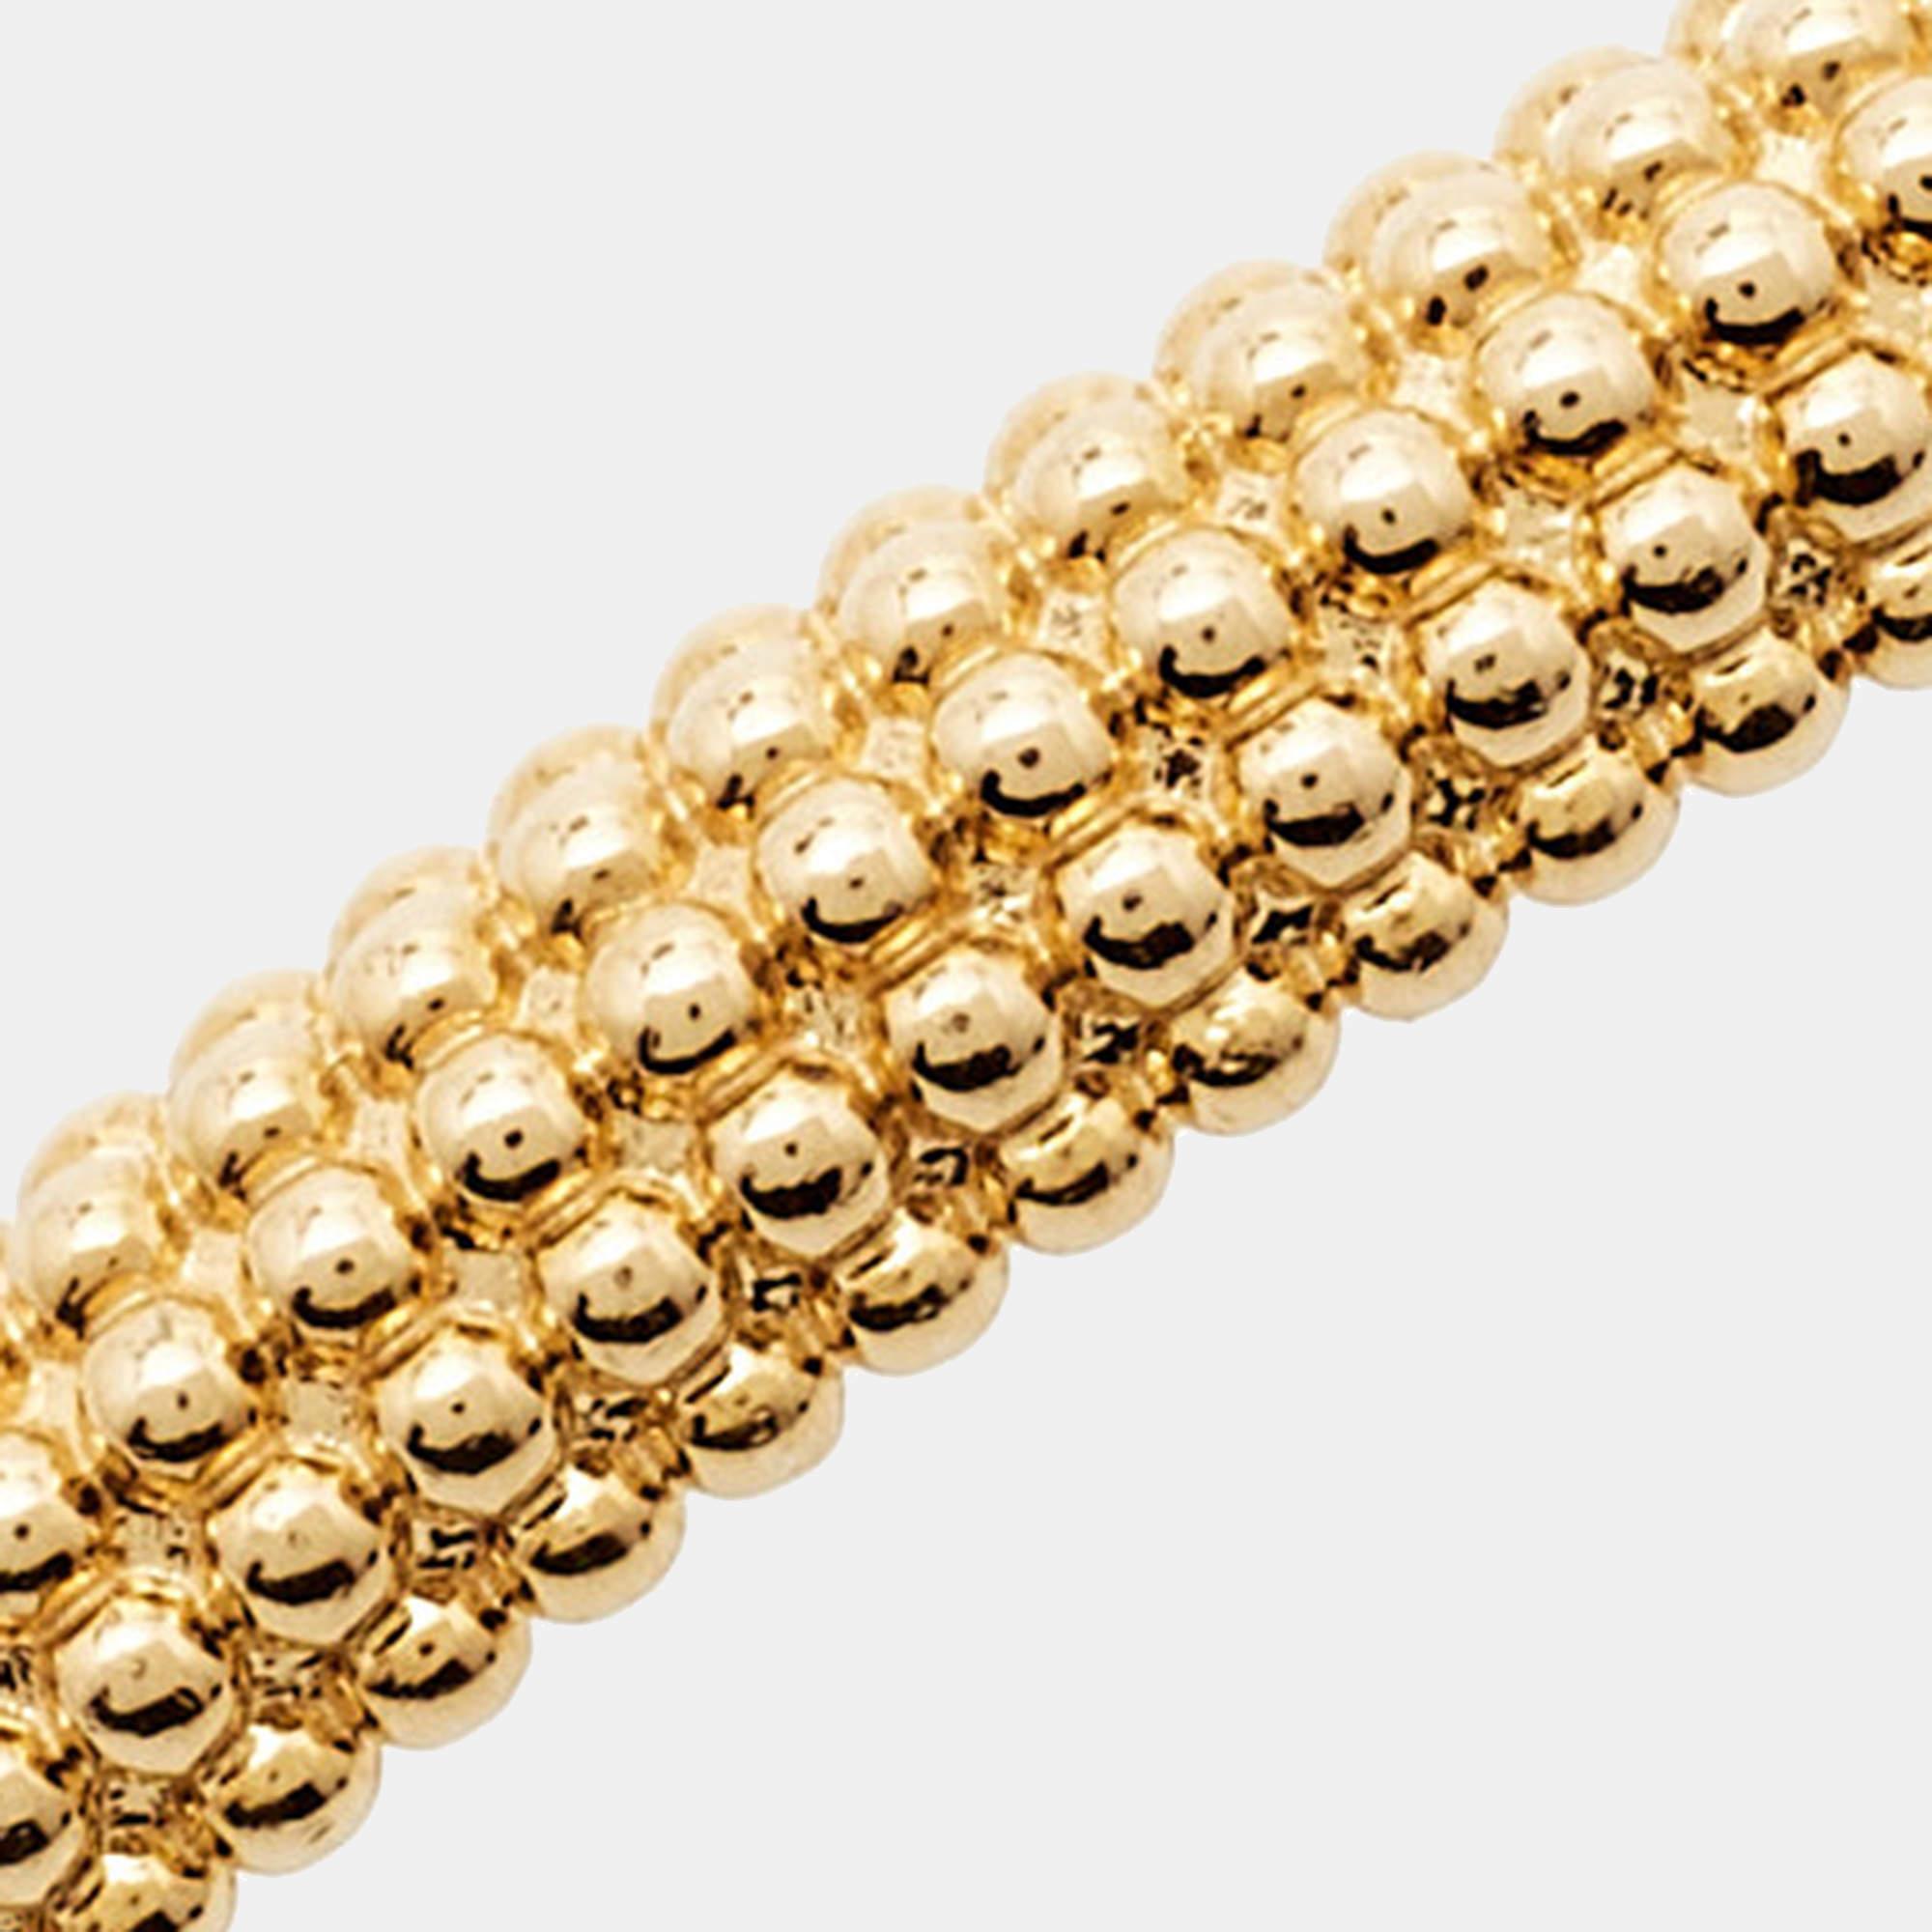 van cleef pearls of gold bracelet